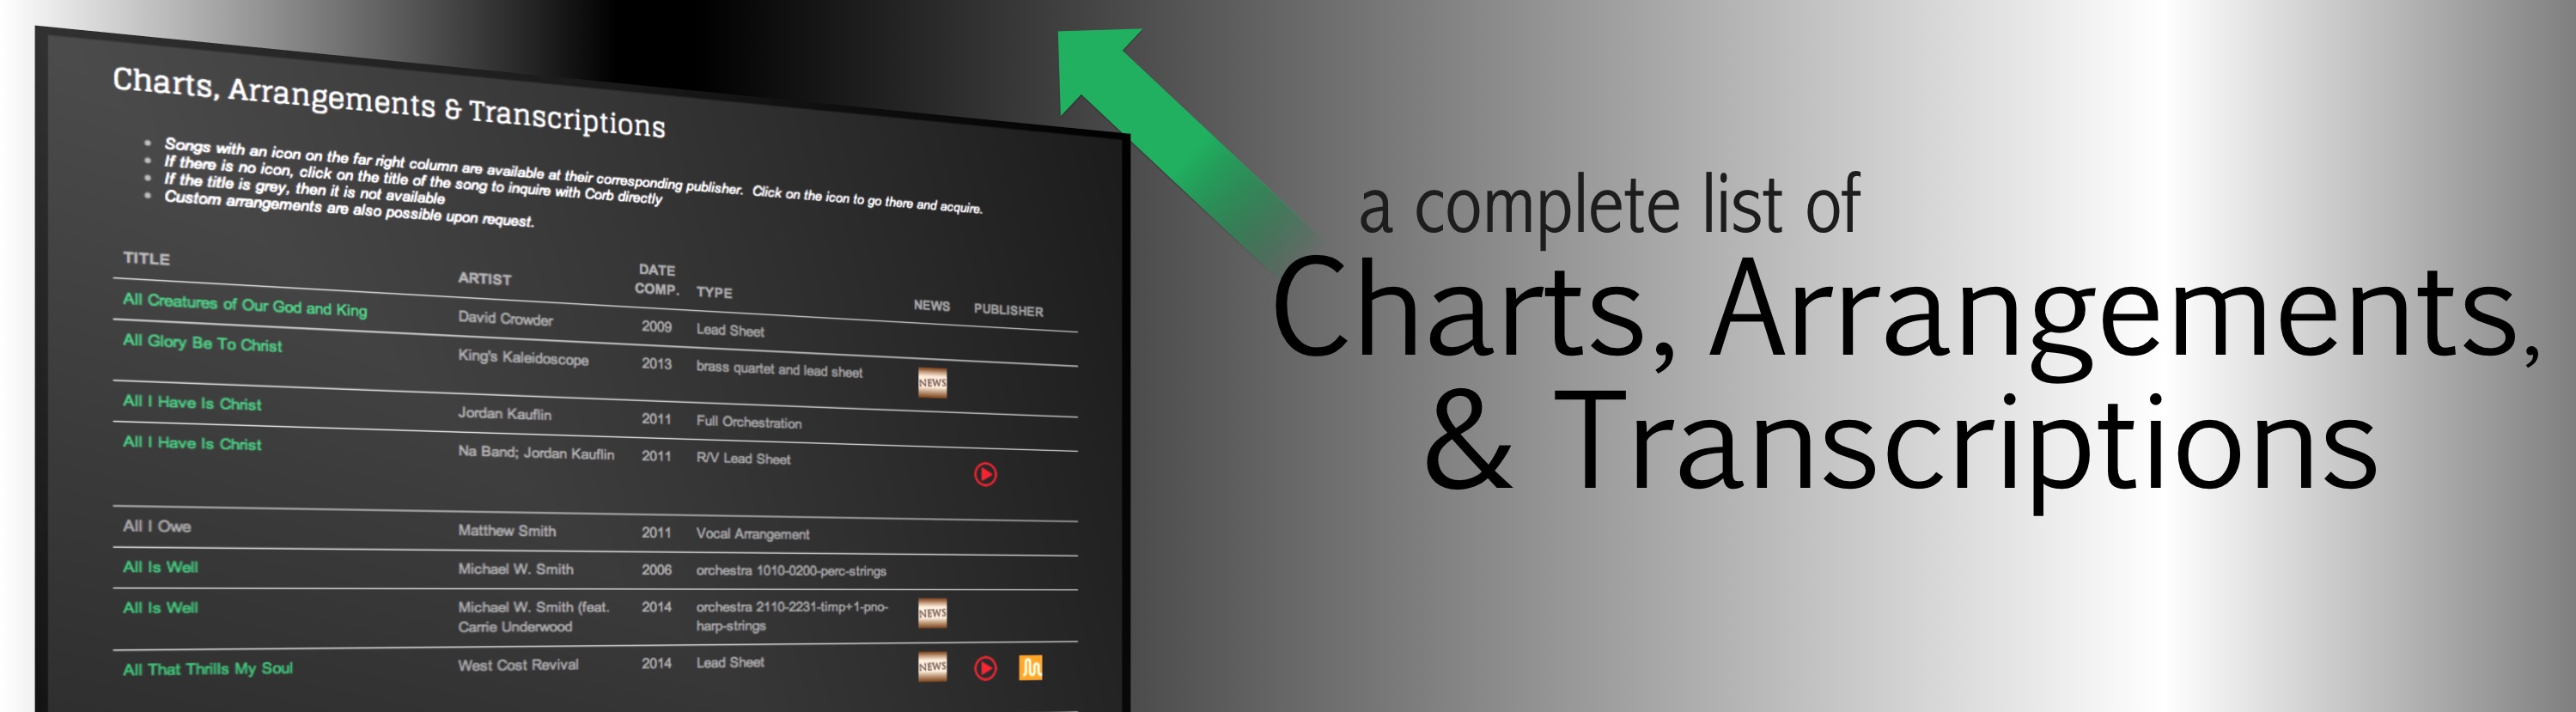 Charts, Arrangements & Transcriptions